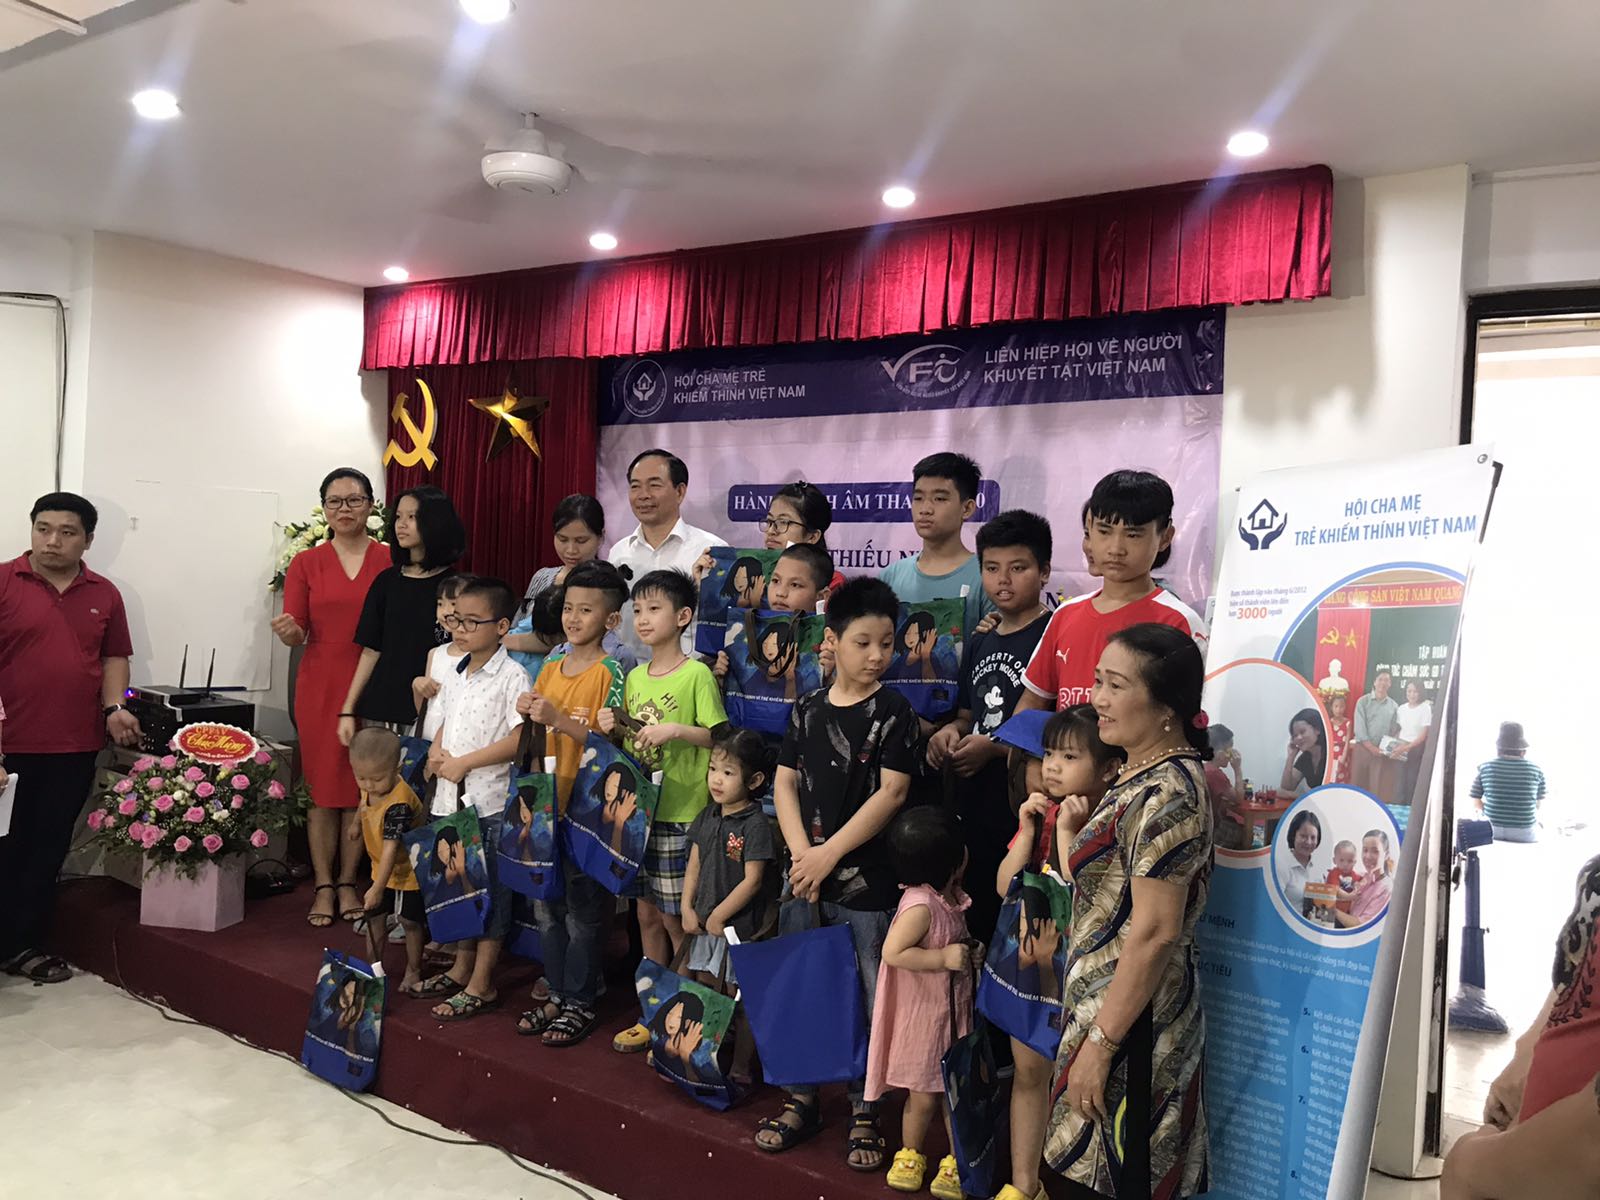 Chúc mừng Hội cha mẹ trẻ khiếm thính Việt Nam